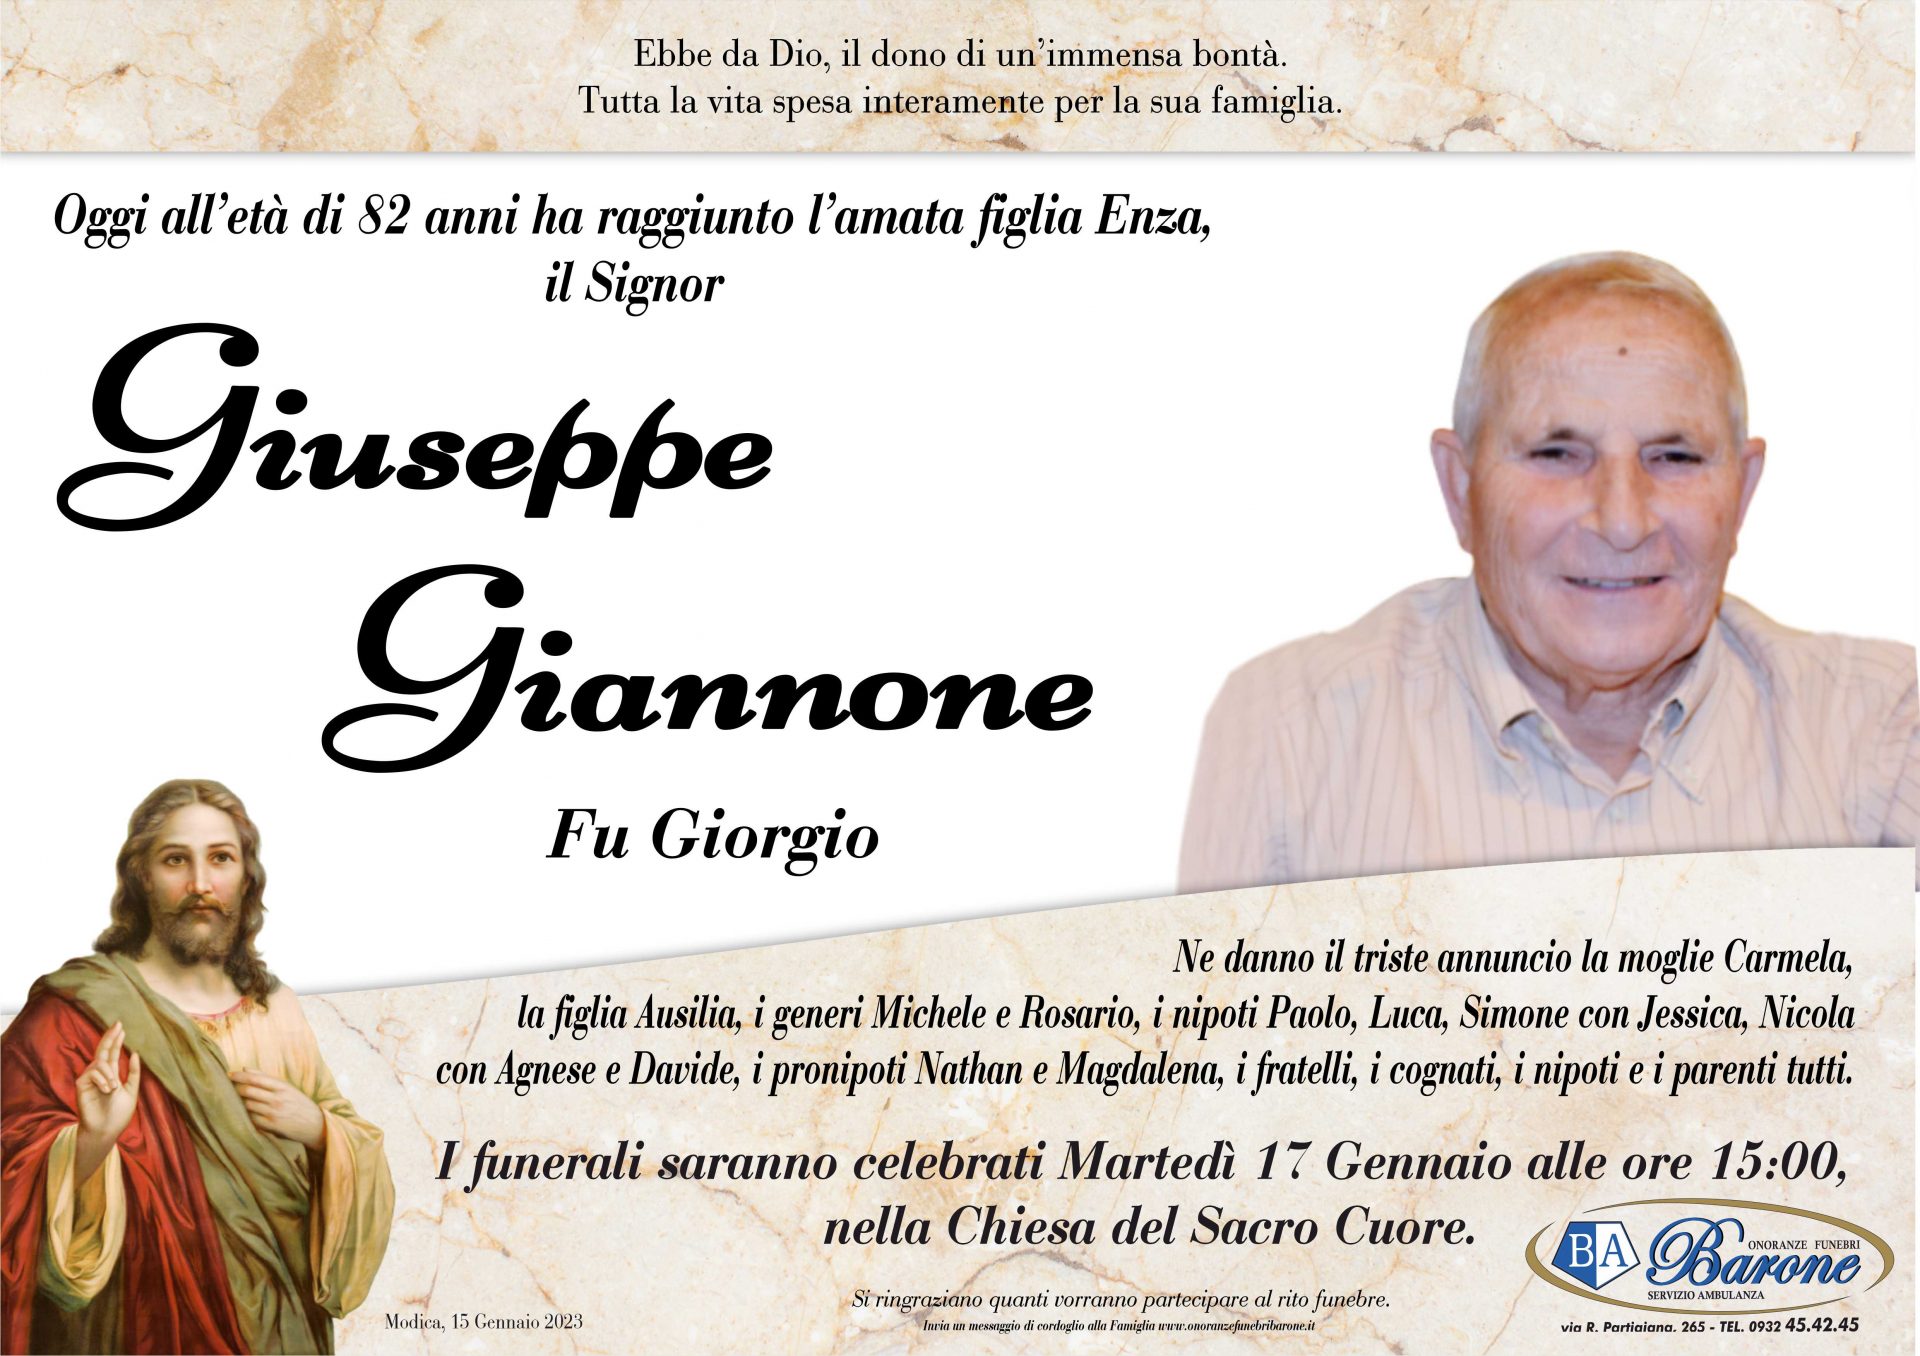 Giuseppe Giannone